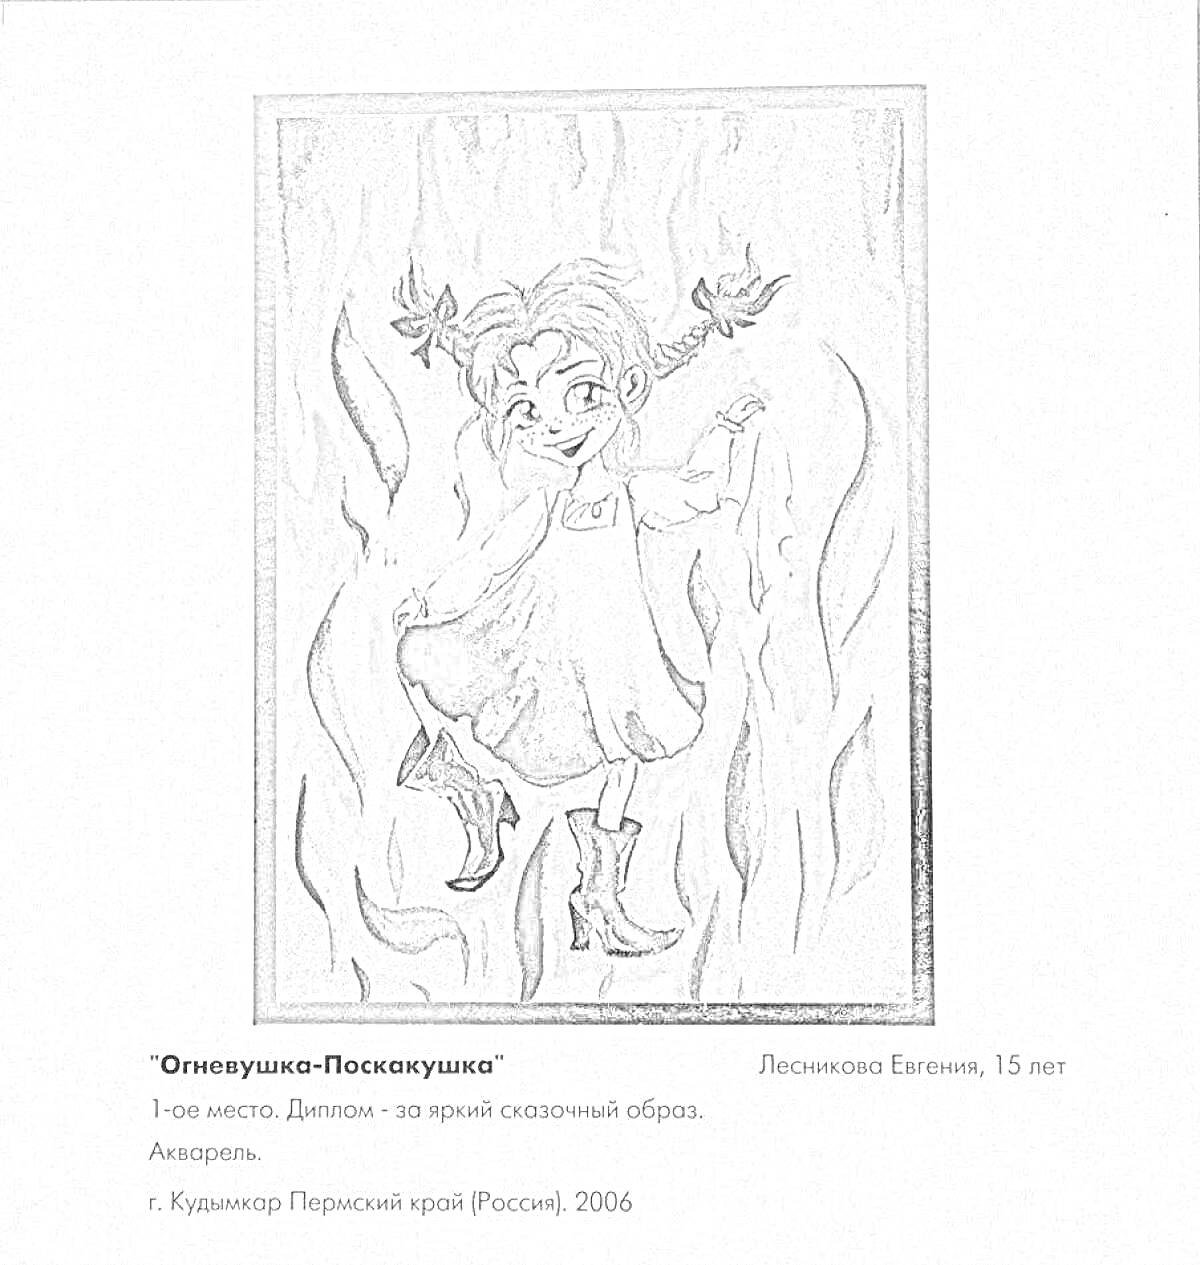 Огневушка-Поскокушка, девочка в платье с пышными бантами, танцующая среди огня, черно-белое изображение